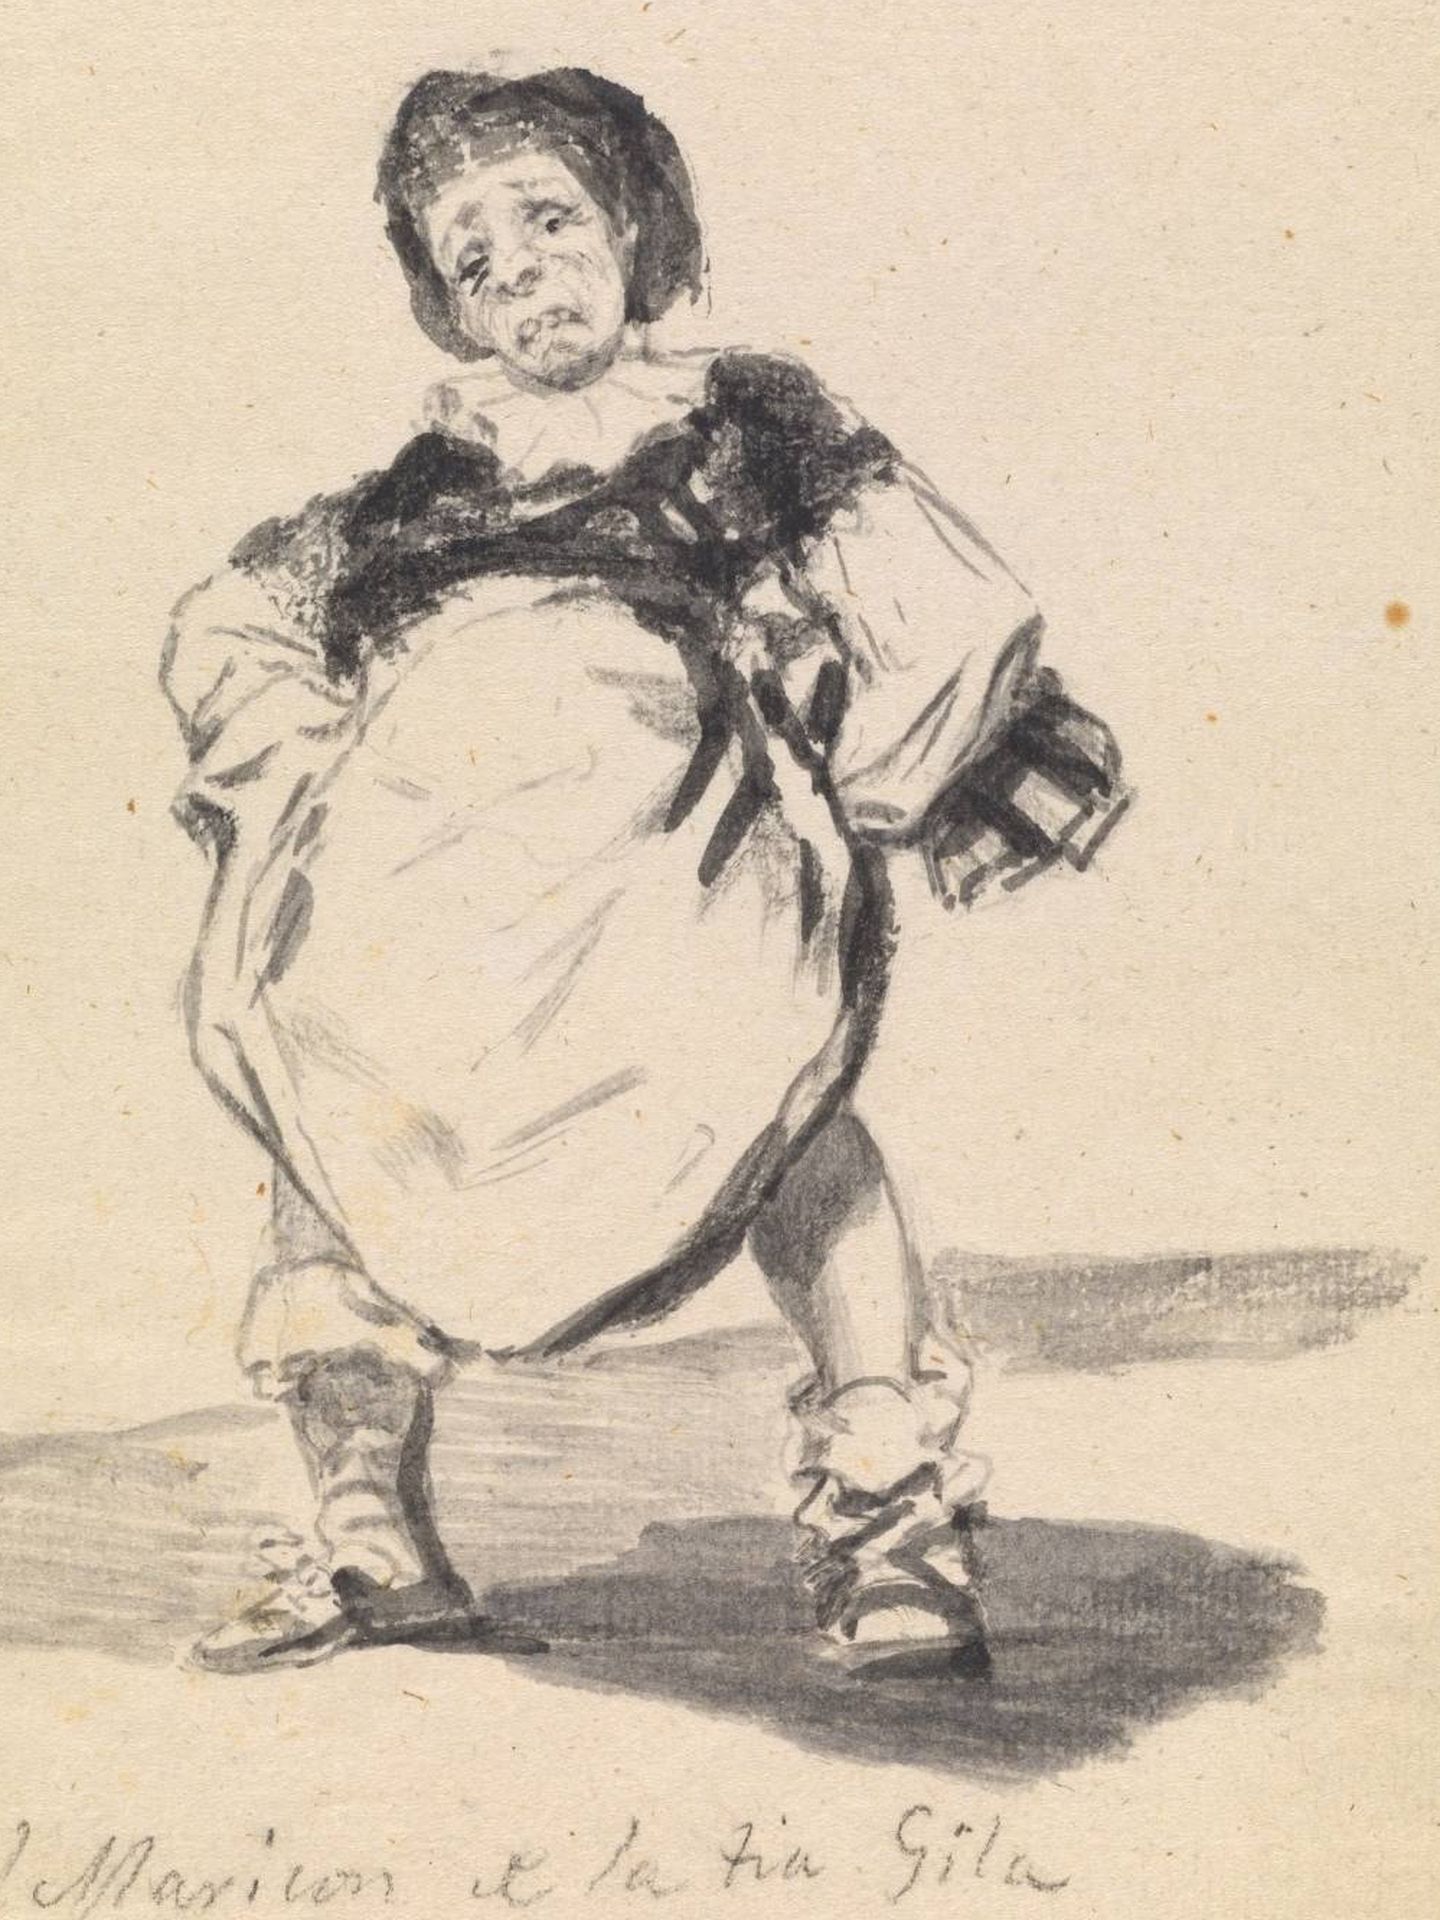 'El maricón de la tía Gila', Francisco de Goya, 1808-1814. Museo del Prado.